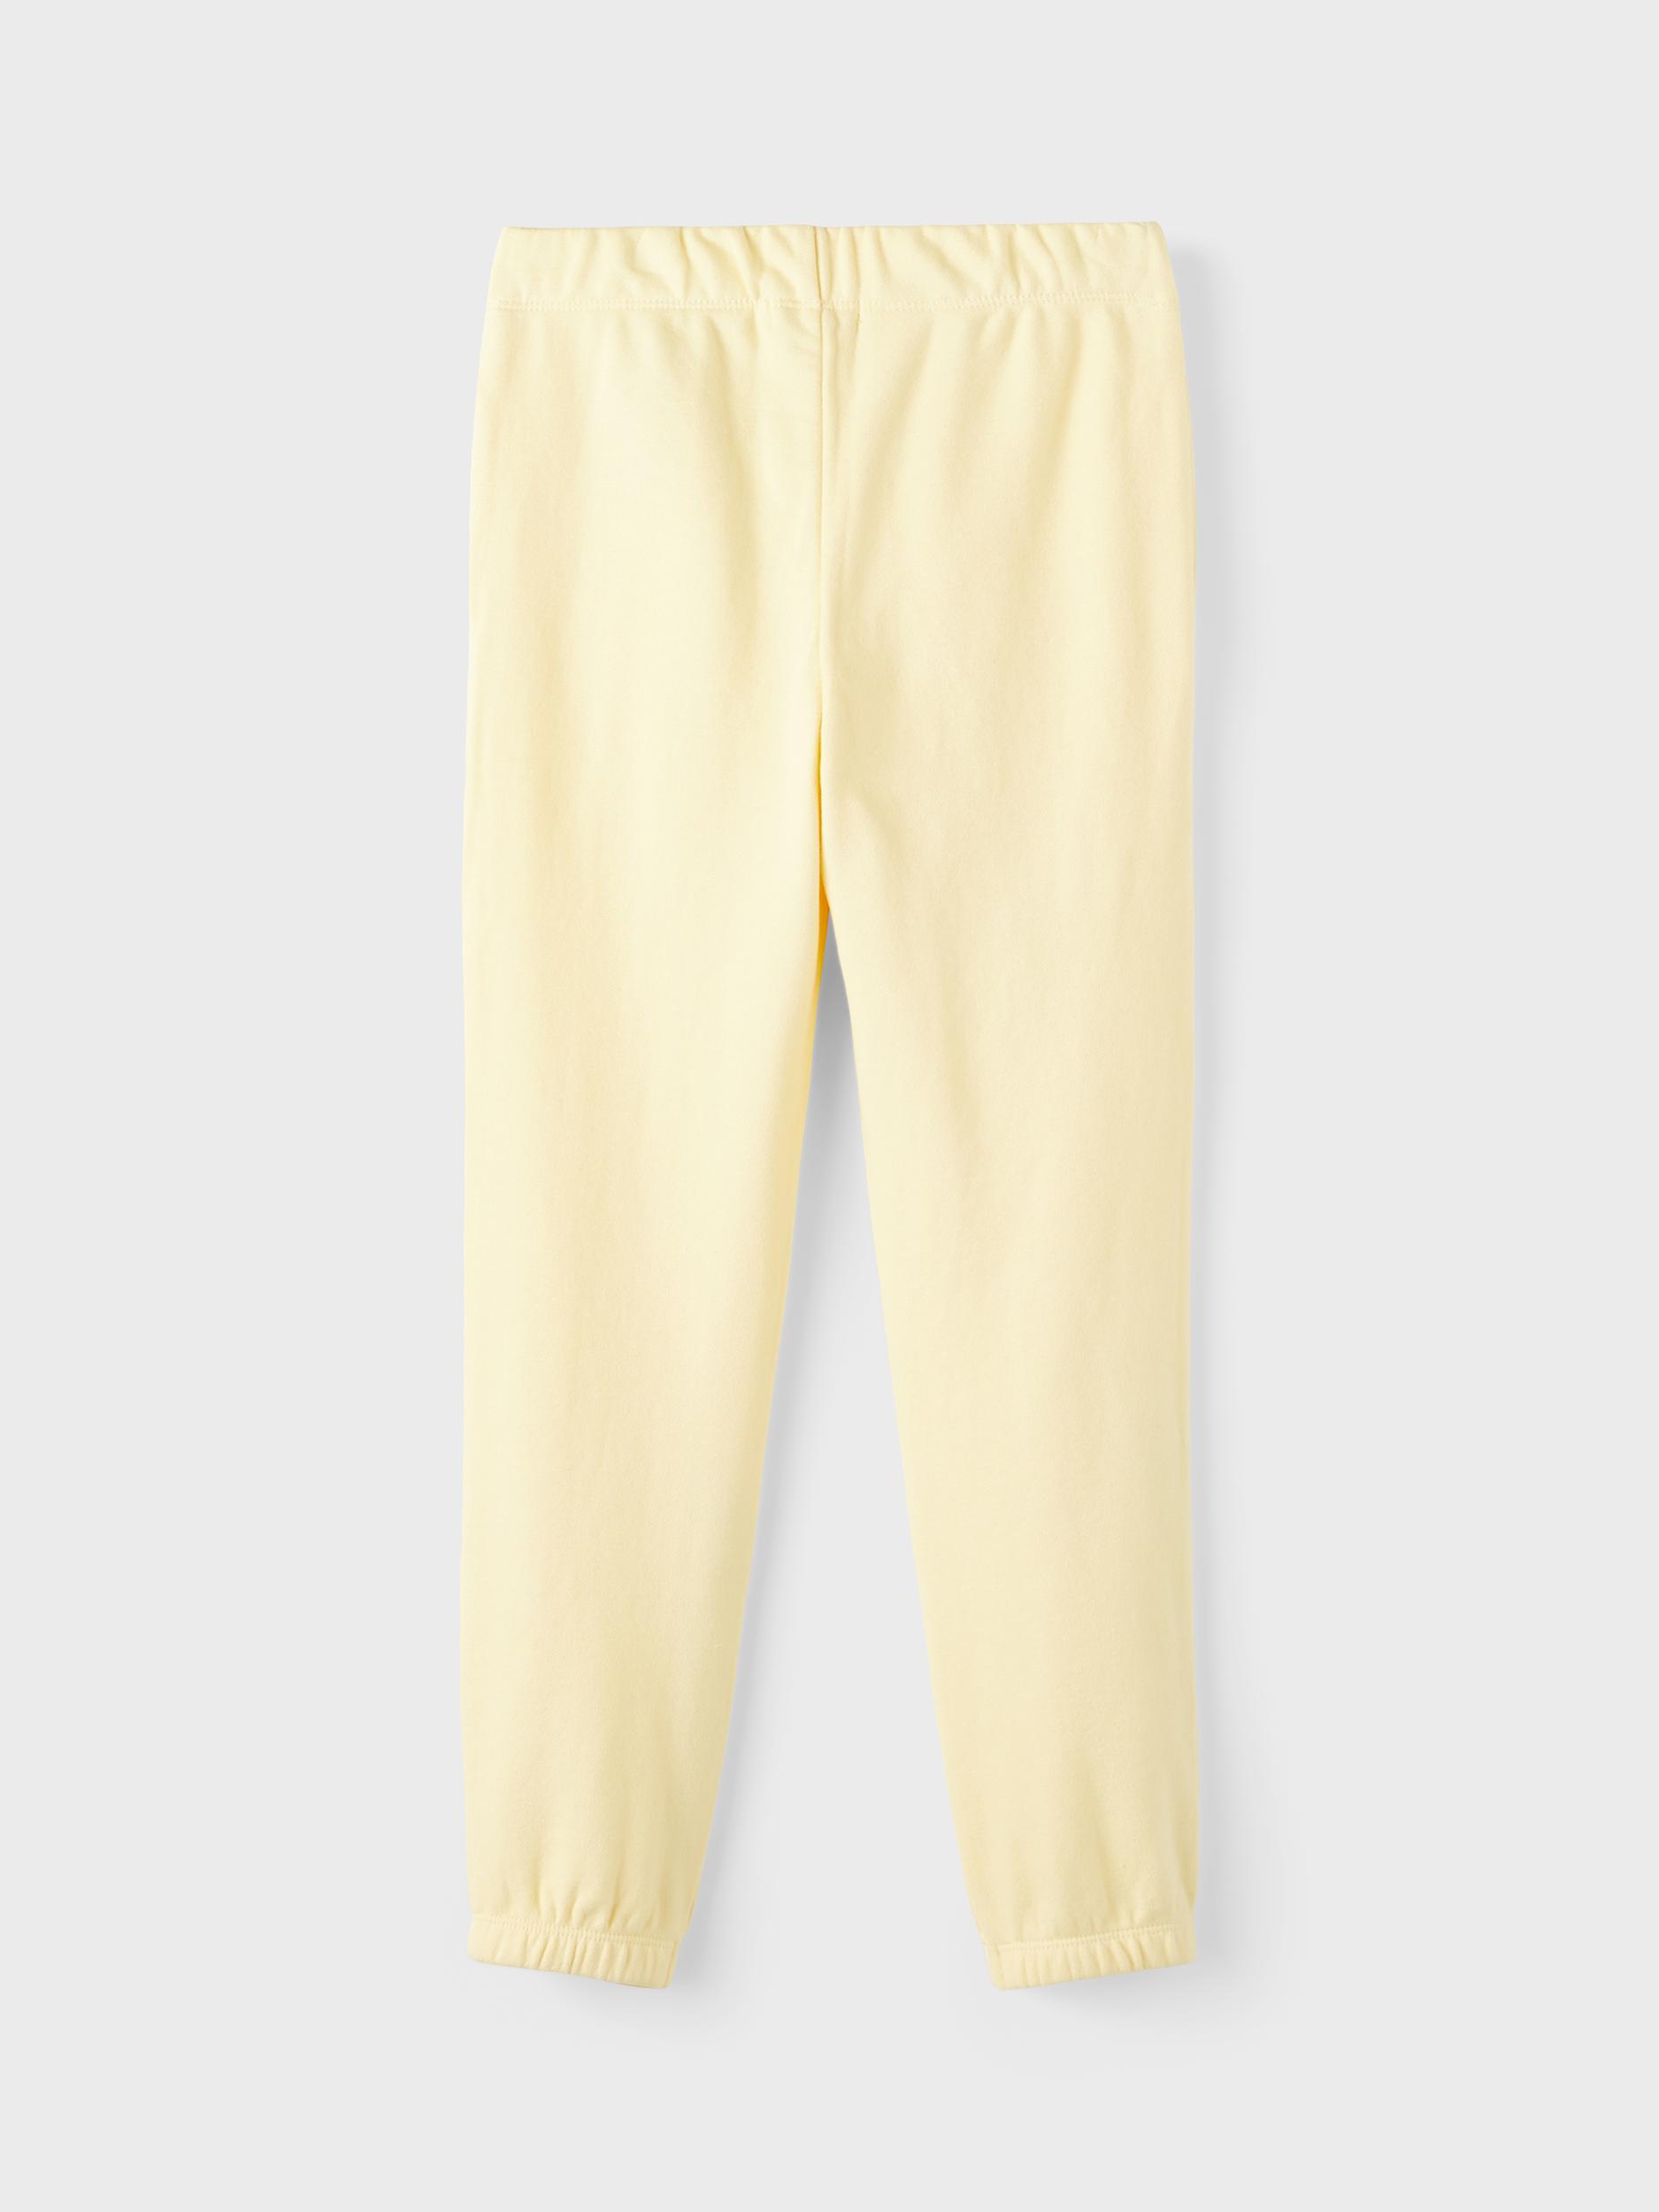  Sweatpants, Double Cream, 128 cm